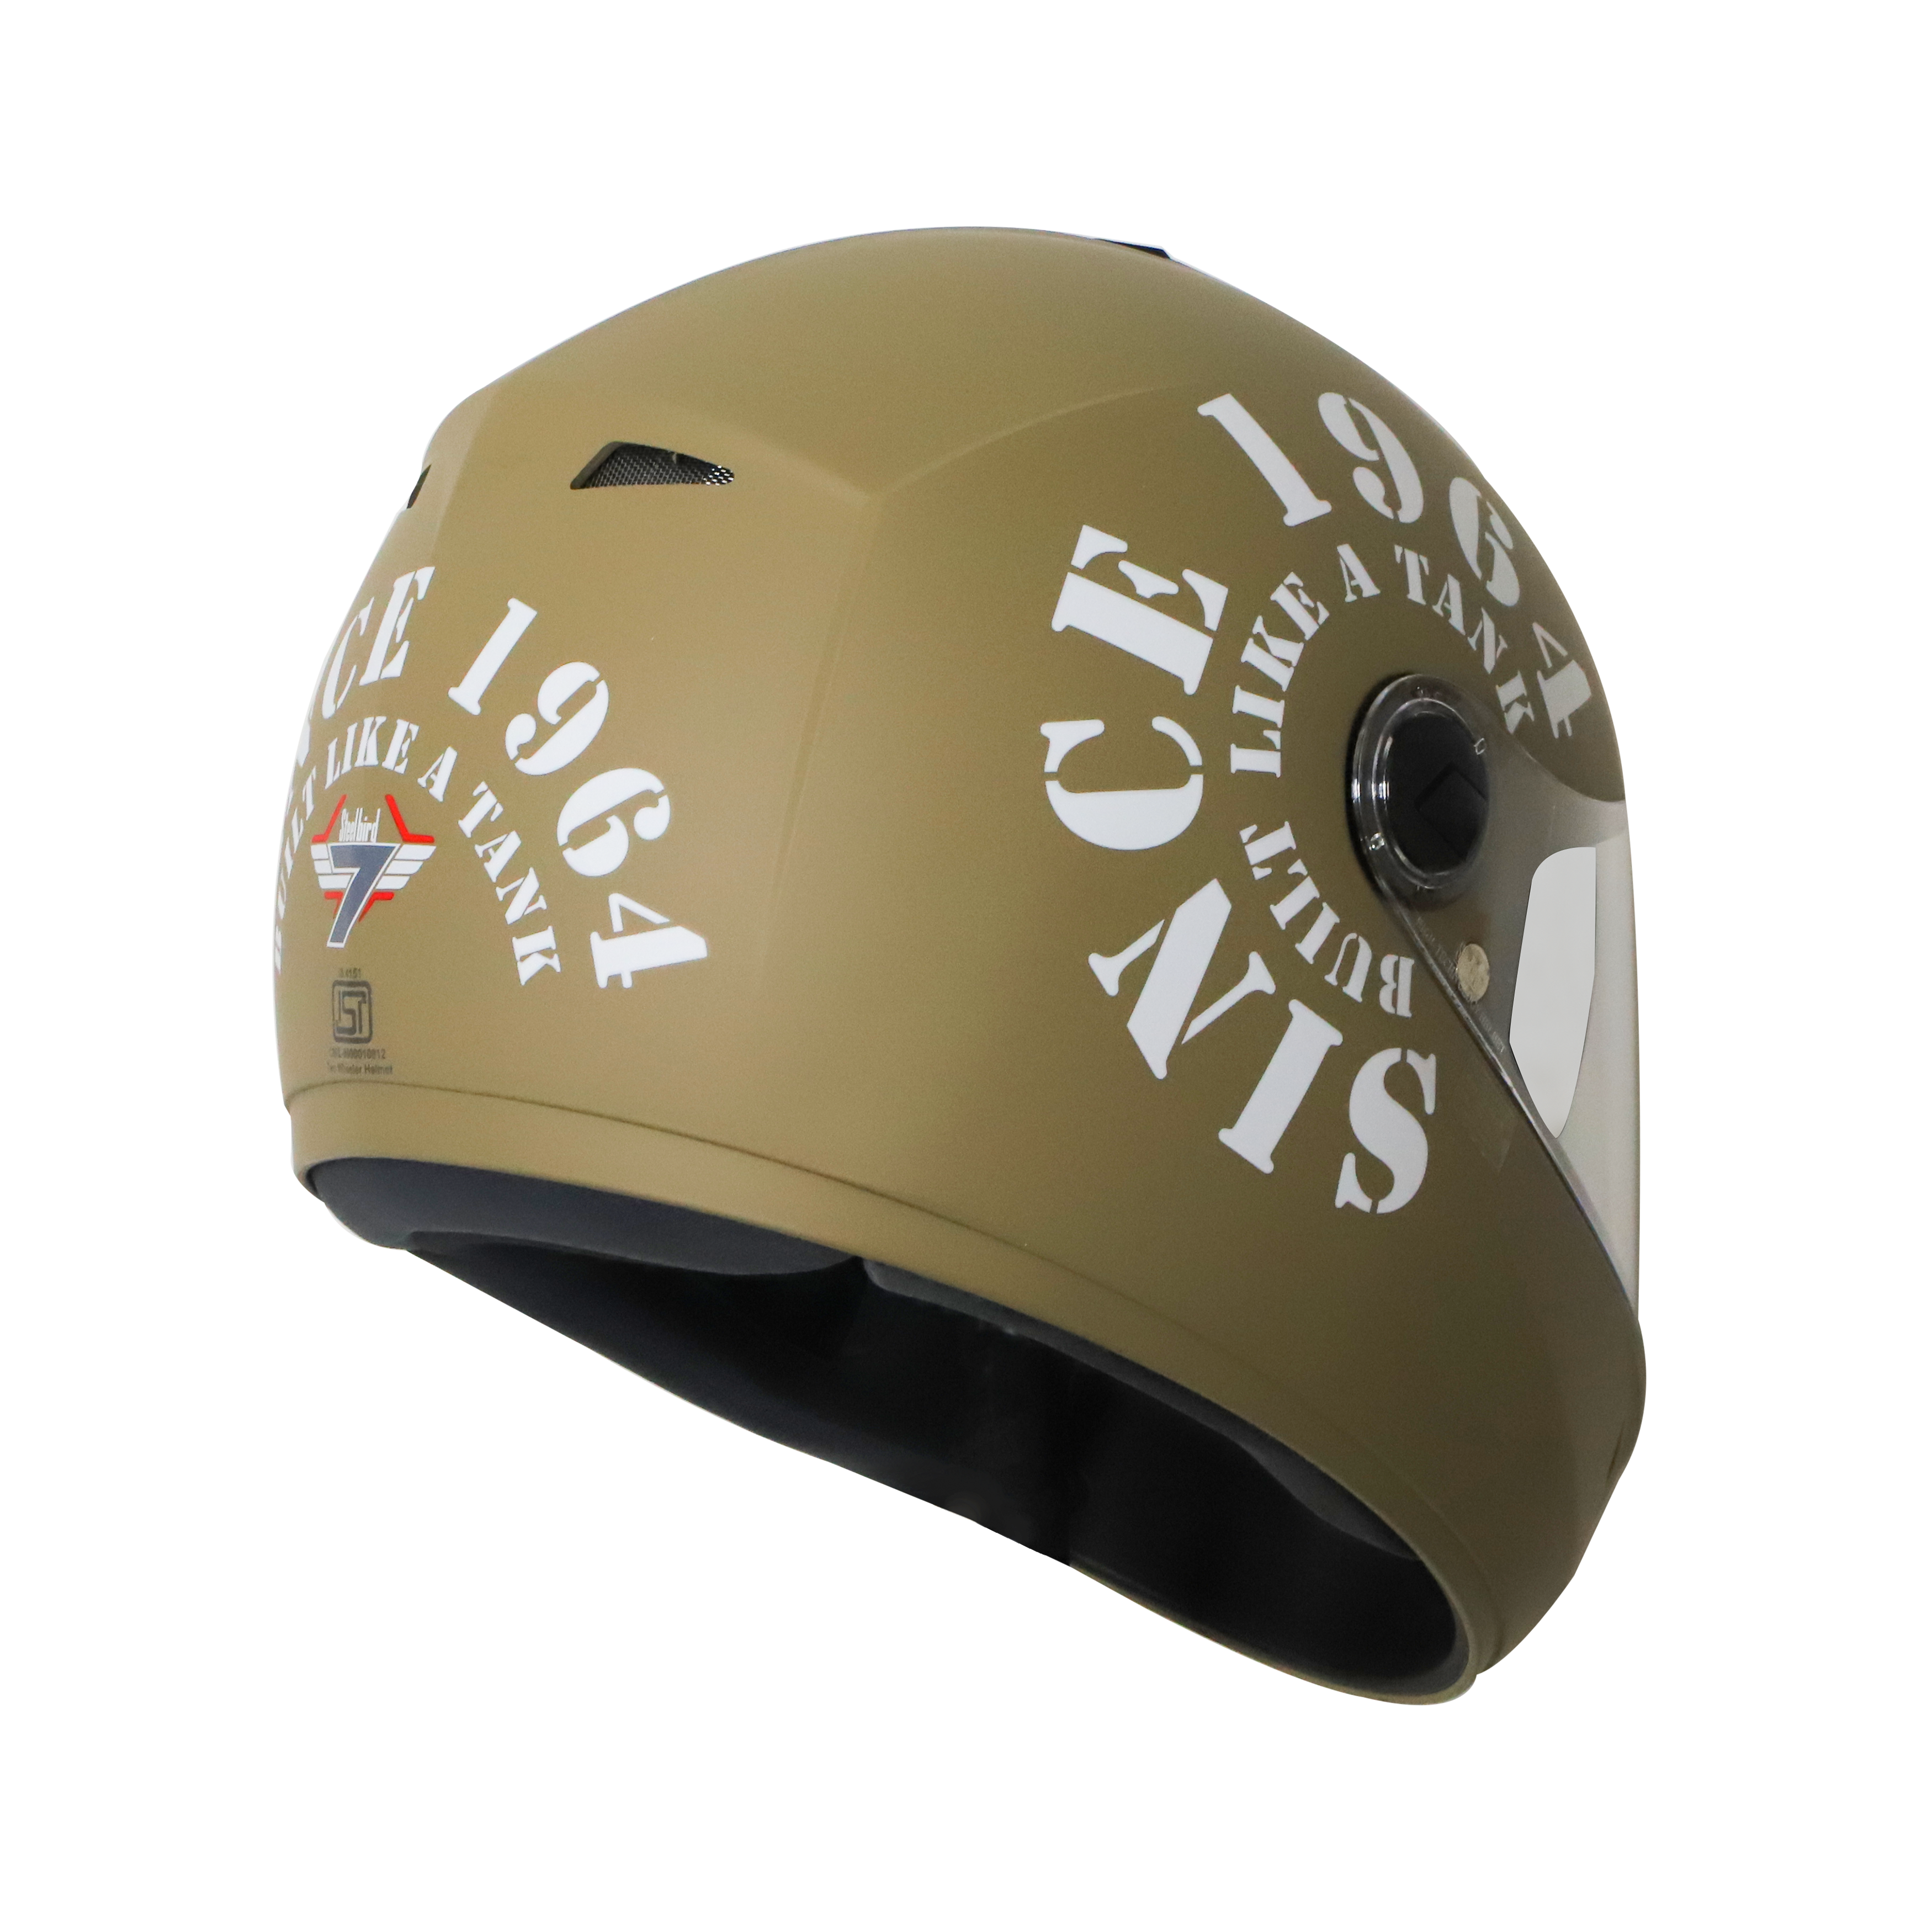 Steelbird Cyborg Tank Full Face Helmet With Chrome Silver Sun Shield, ISI Certified Helmet (Matt Desert Storm White)